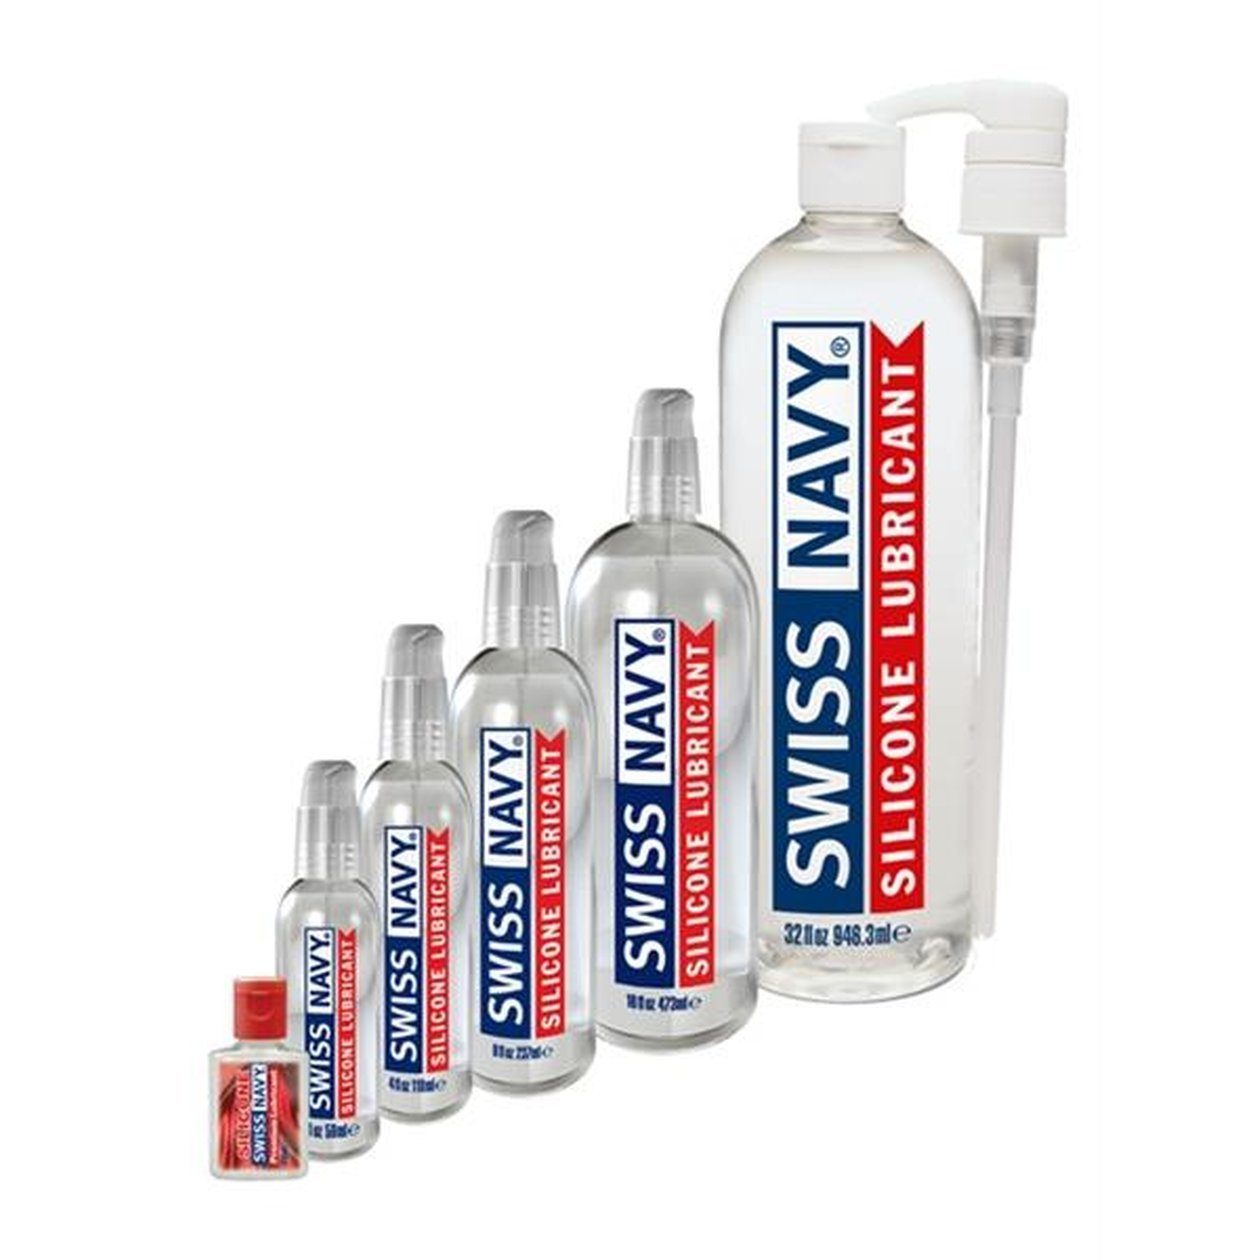 SWISS NAVY Gleit- und auf Lubricant Gleitmittel Silikonbasis Premium Silicone - Massagegel